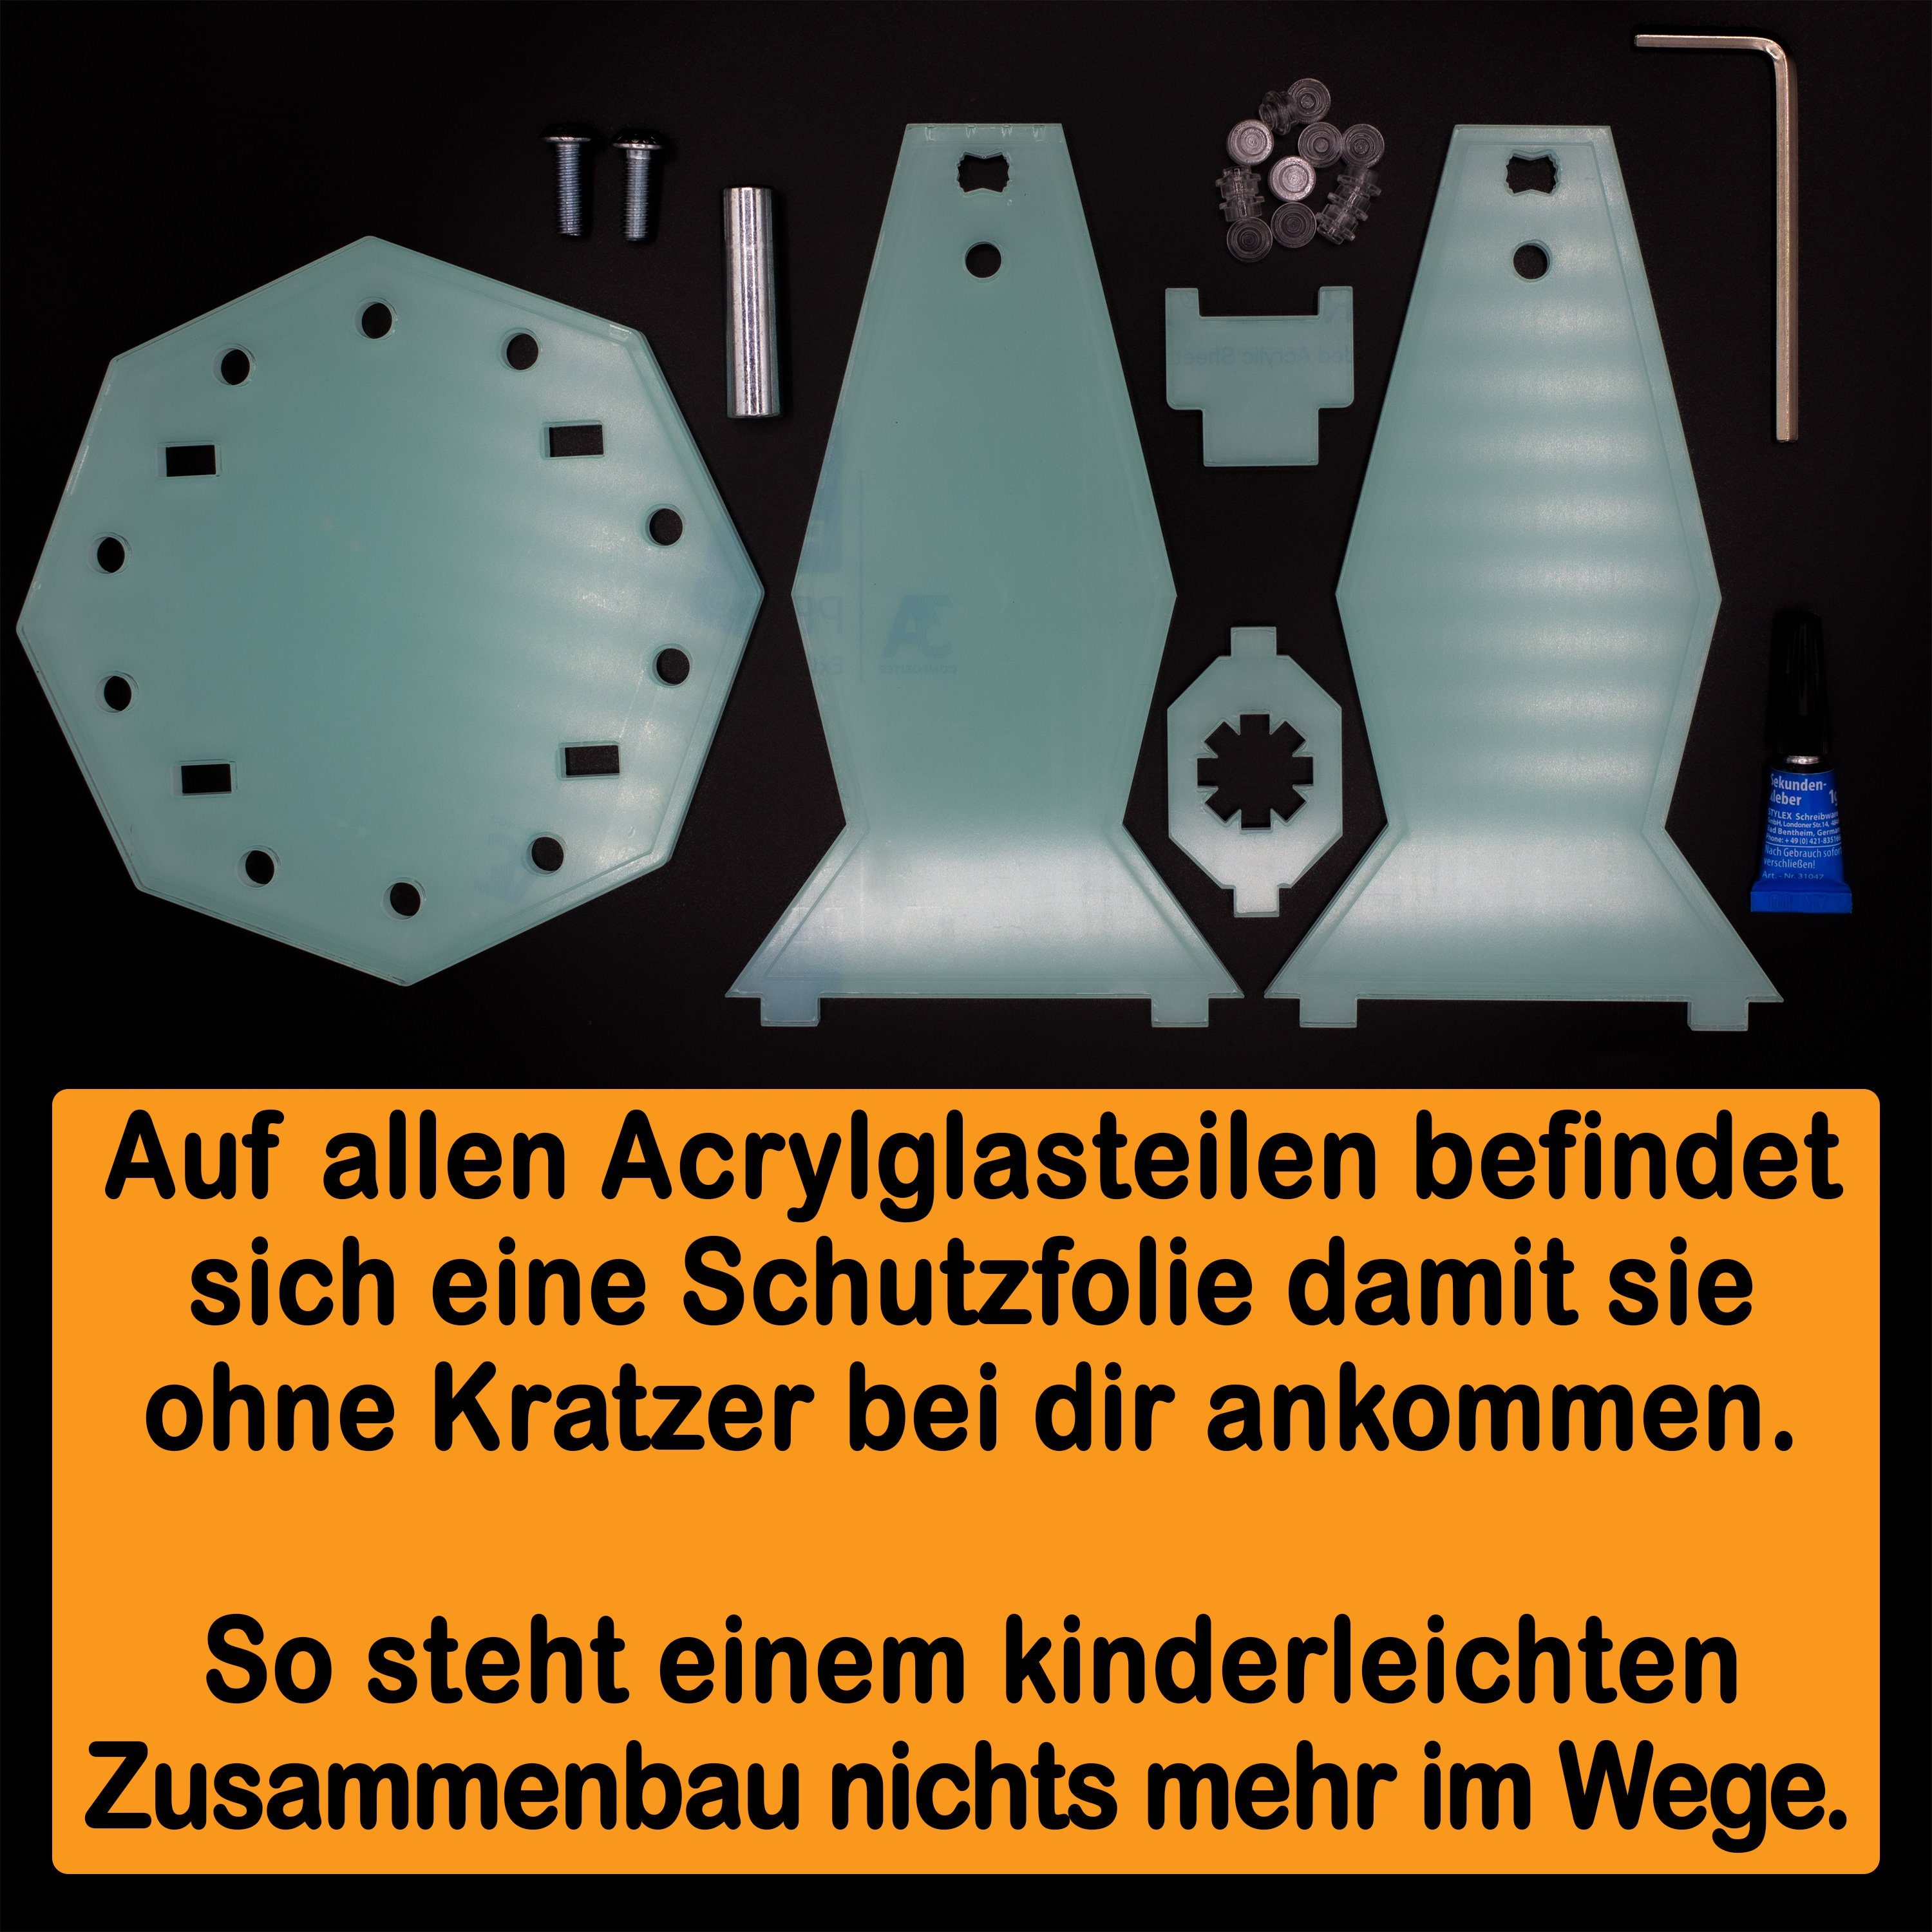 Acryl Stand Palpatine´s Winkel Standfuß Emperor 100% und Shuttle Positionen Display zum in 8096 Germany selbst einstellbar, (verschiedene zusammenbauen), AREA17 Made